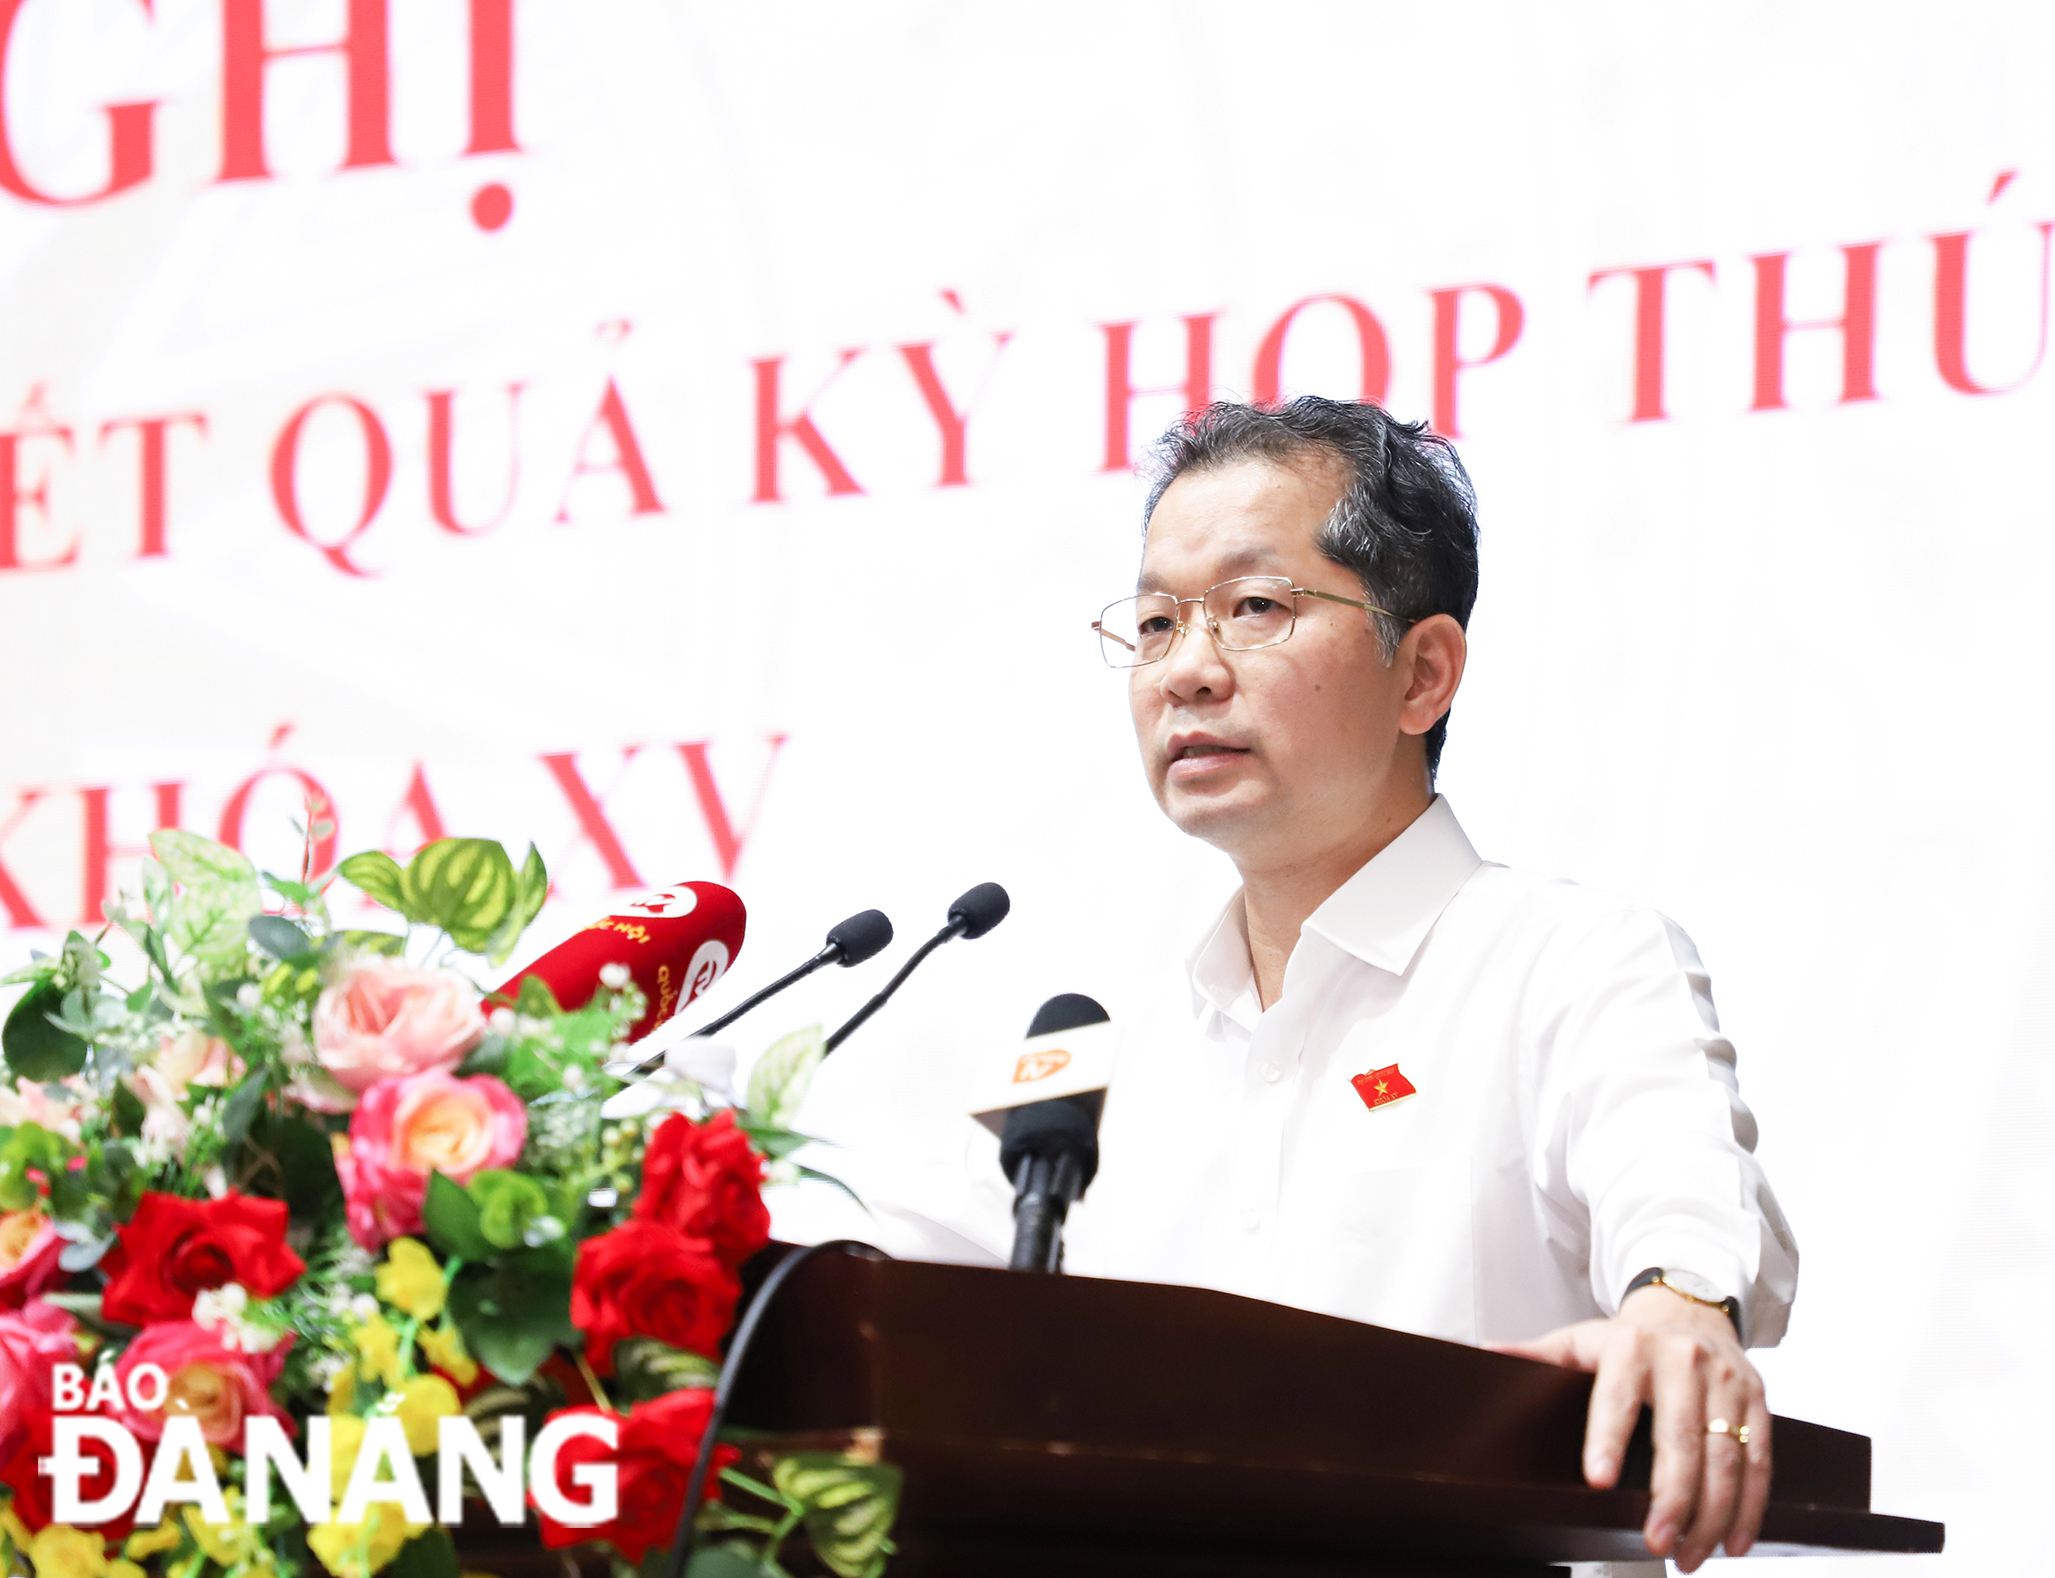 Đồng hành, ủng hộ để thành phố Đà Nẵng thực hiện các cơ chế, chính sách đặc thù